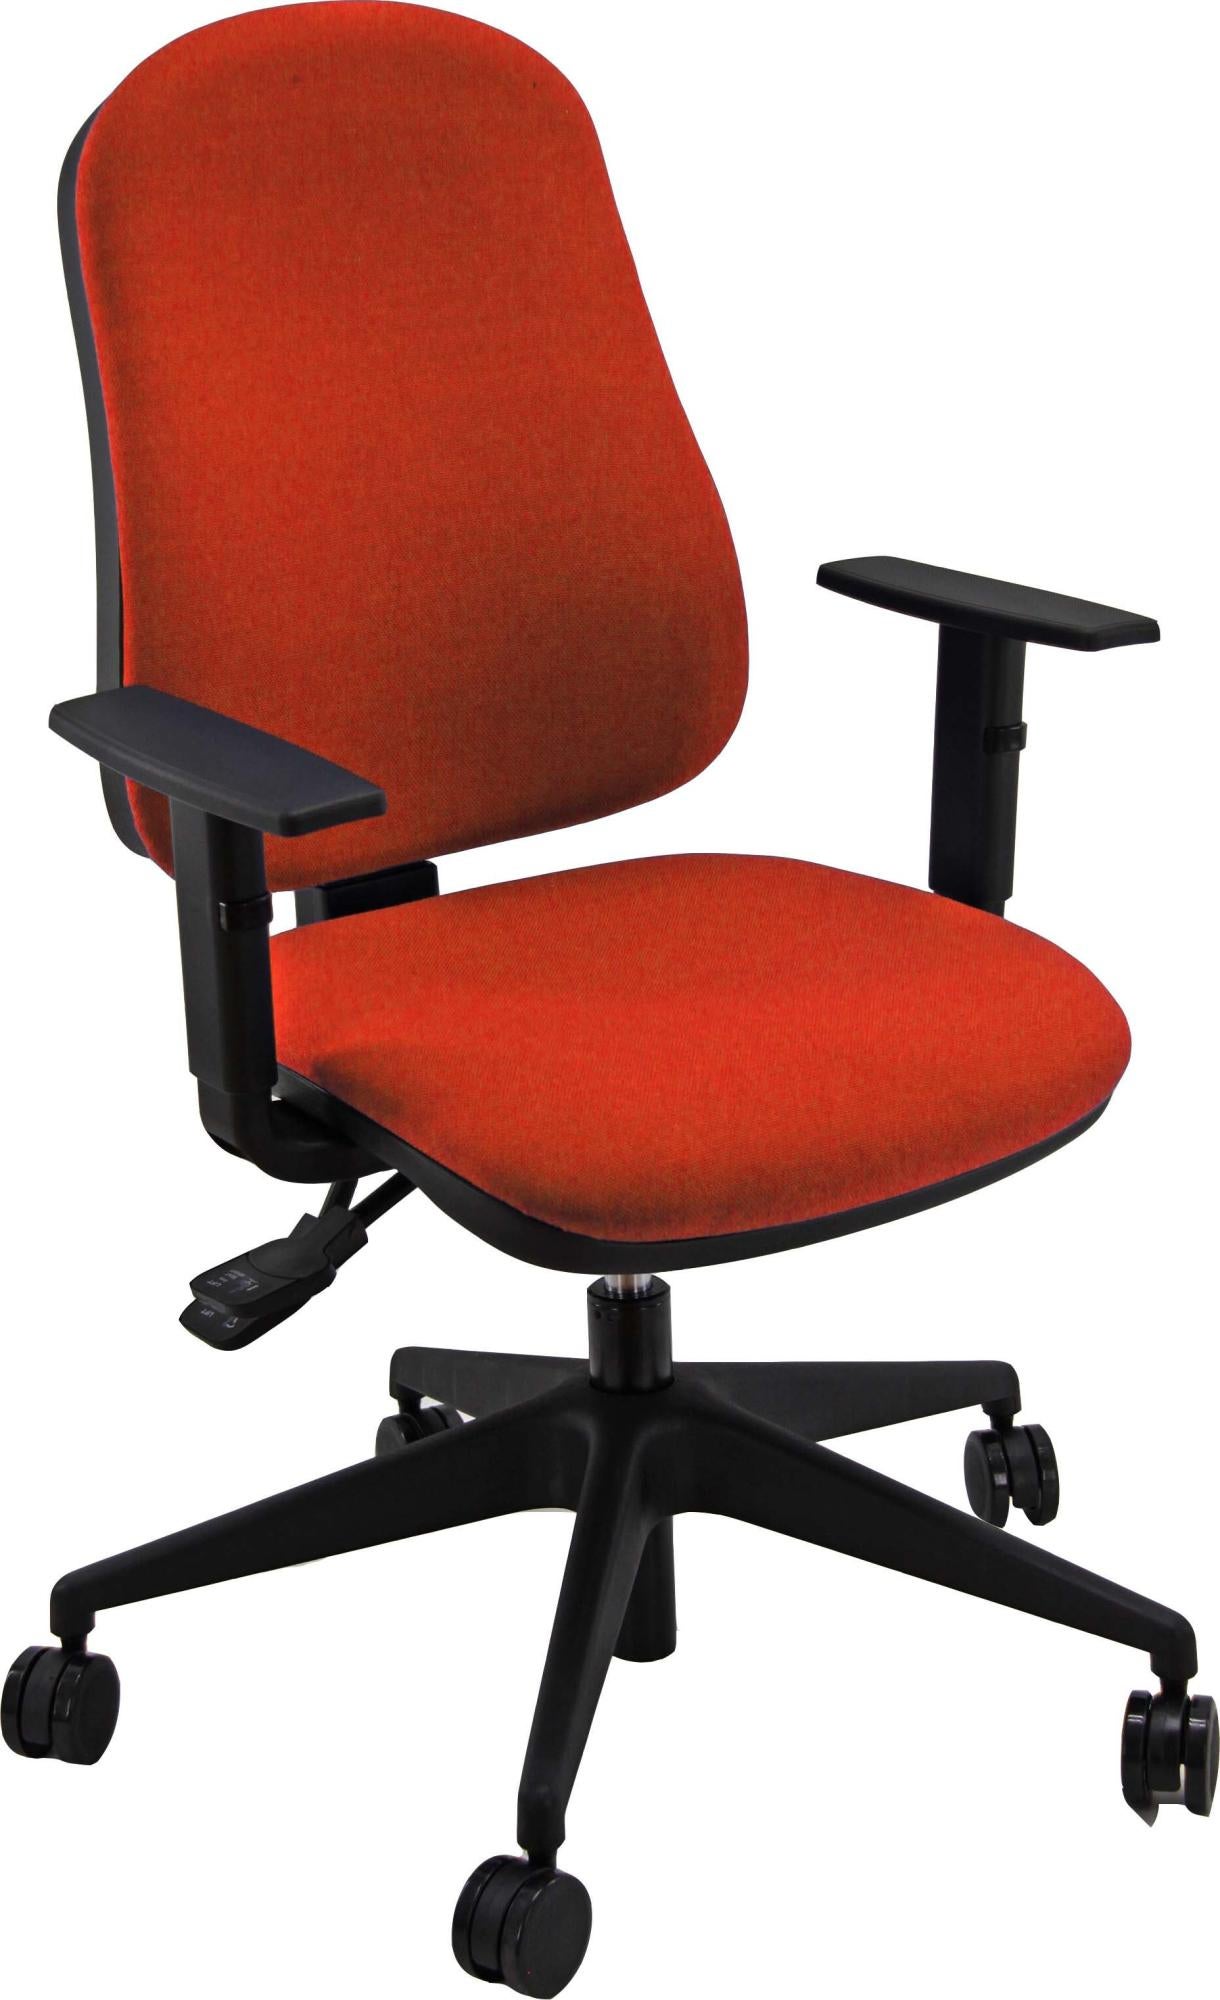 Silla de escritorio sincro simpel color roja con reposabrazos ajustables